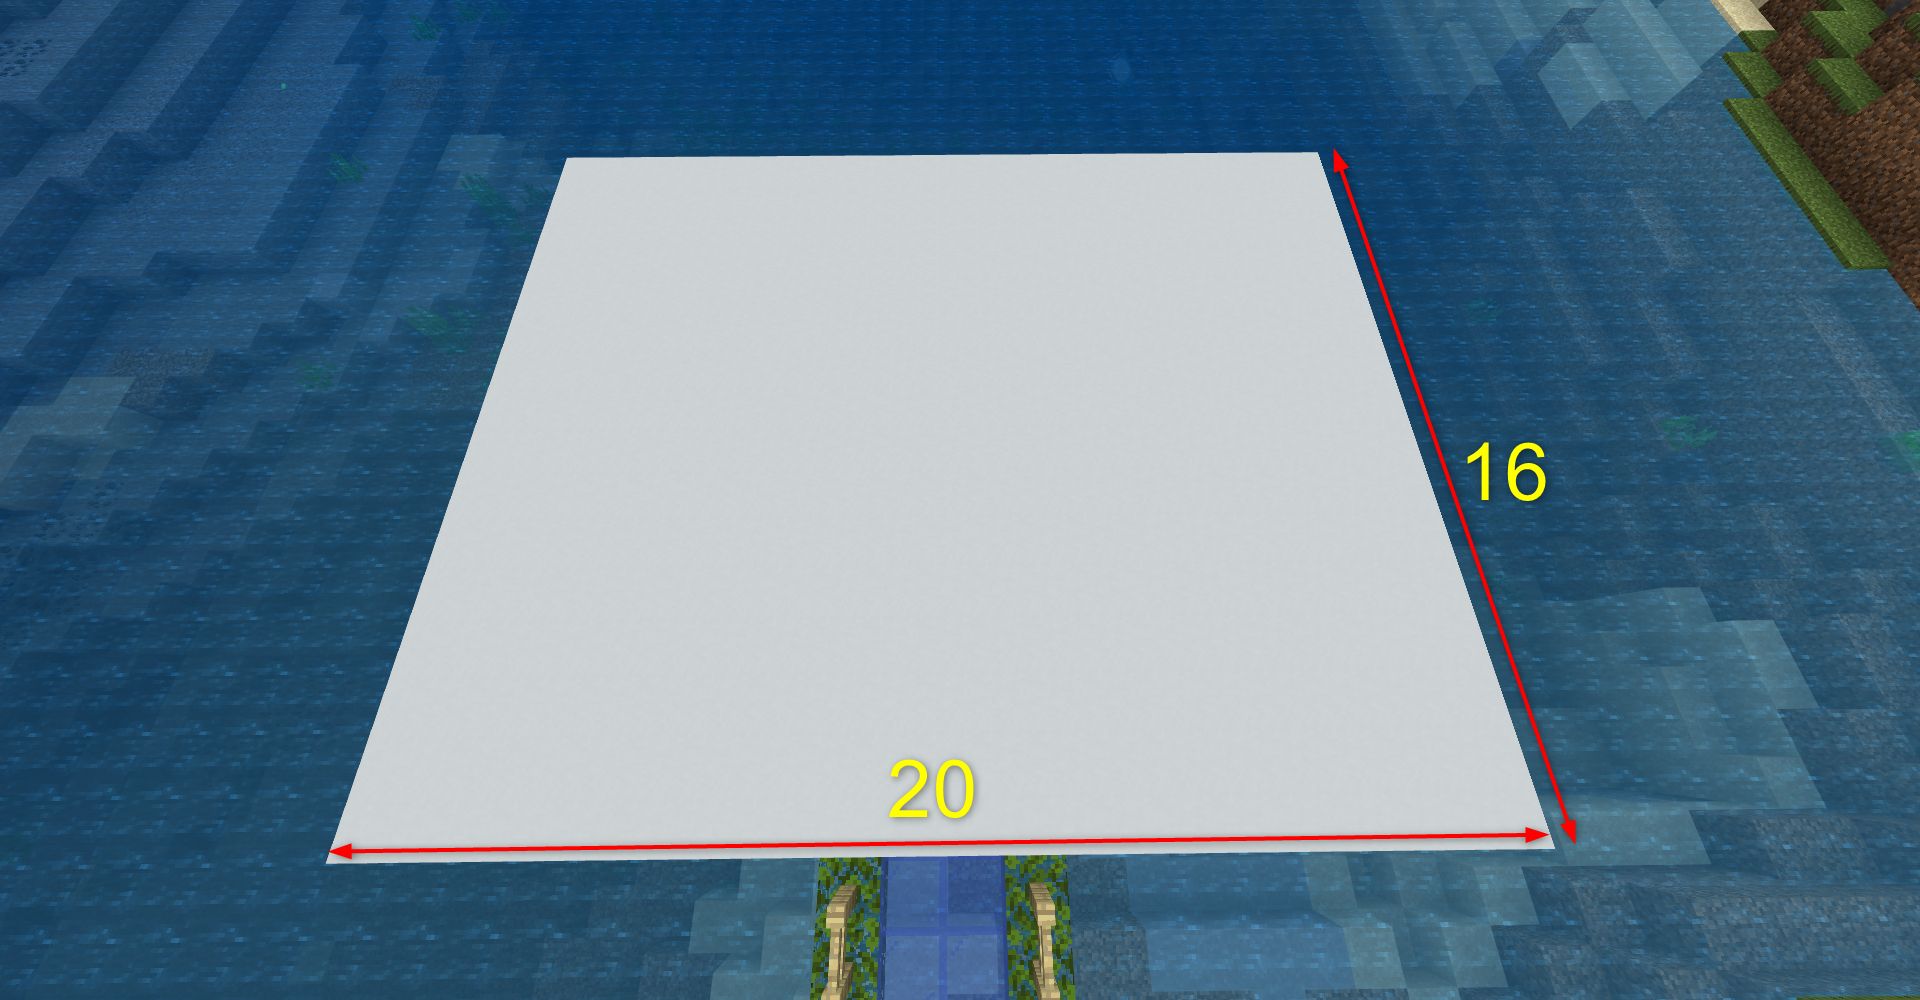 20×16マスの白色のコンクリートを設置